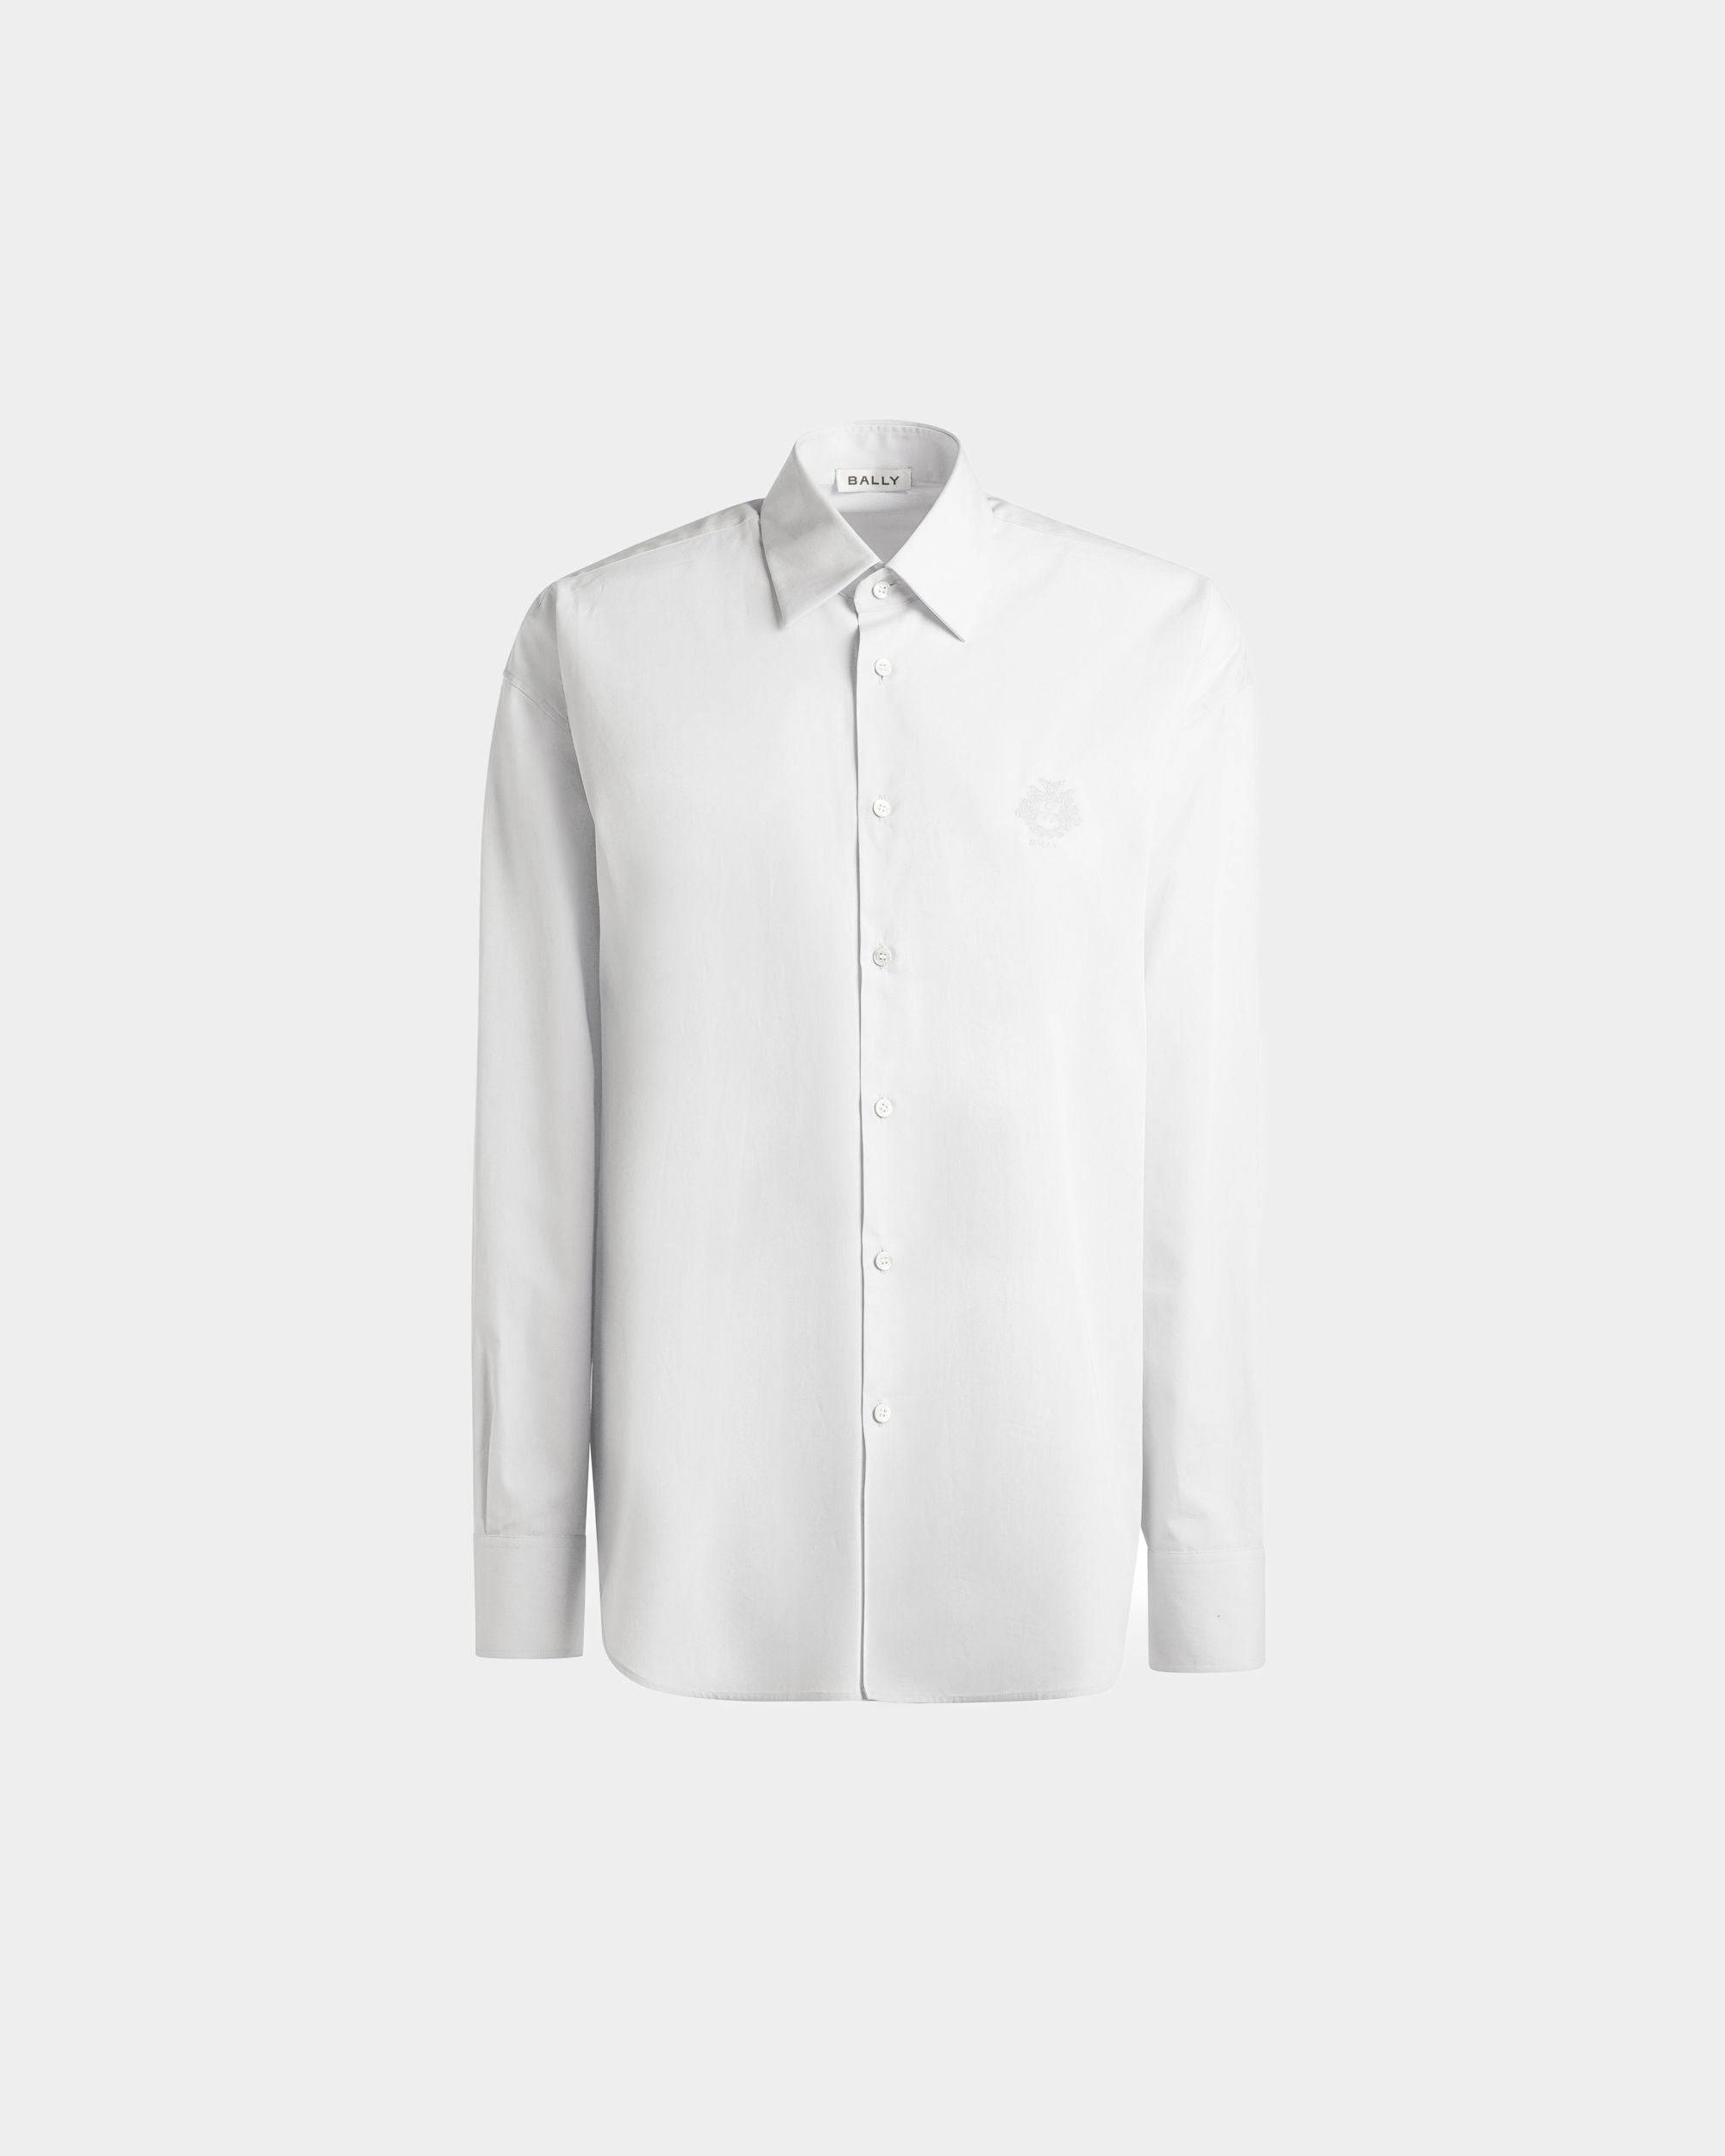 Herrenhemd aus weißer Baumwolle | Bally | Still Life Vorderseite